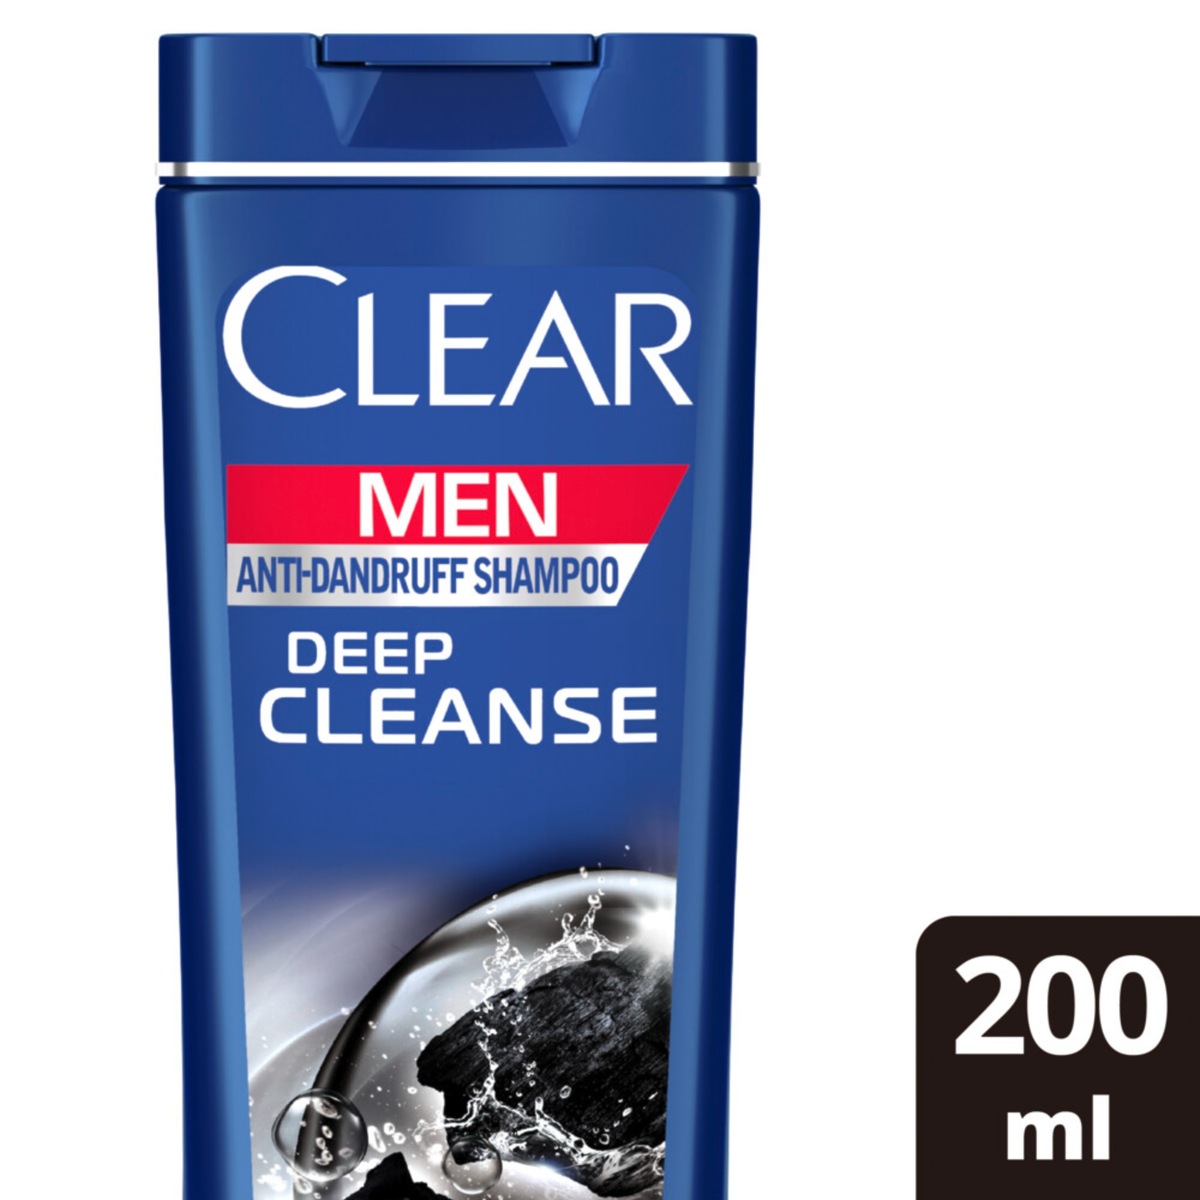 اشتري قم بشراء كلير للرجال شامبو ضد القشرة للتنظيف العميق 200 مل Online at Best Price من الموقع - من لولو هايبر ماركت Shampoo في الامارات